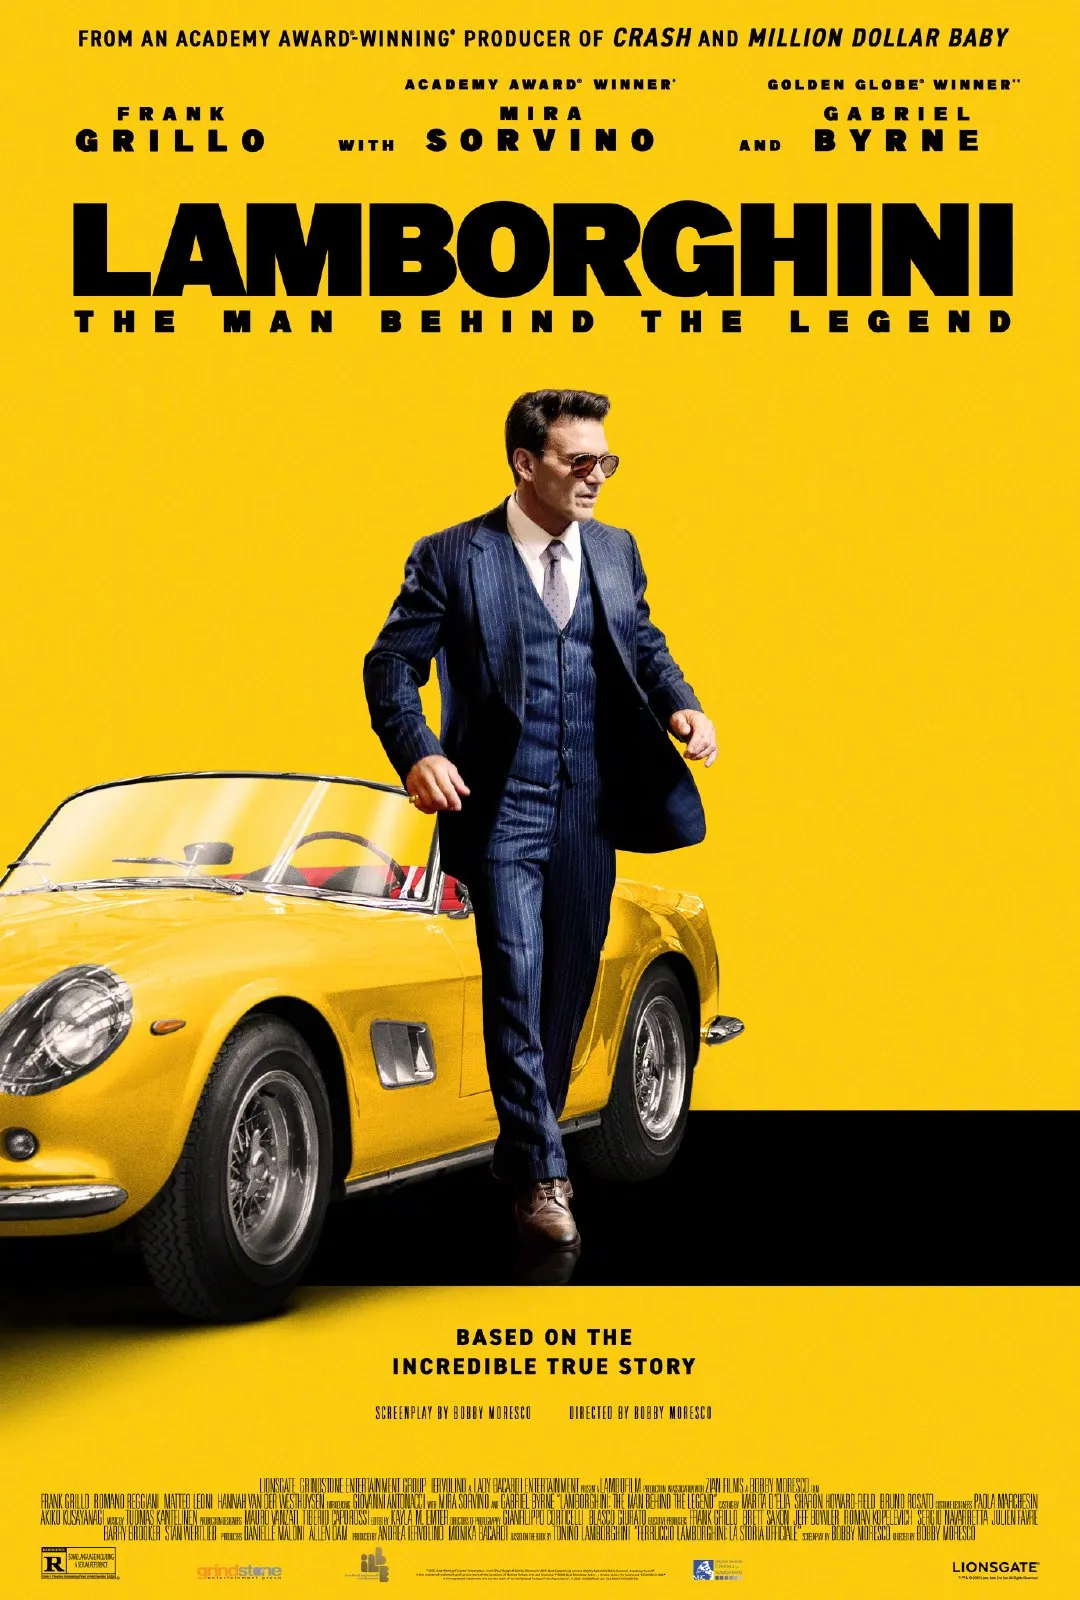 Spotlight on Ferruccio Lamborghini's biopic 'Lamborghini: The Man Behind the Legend' release poster | FMV6